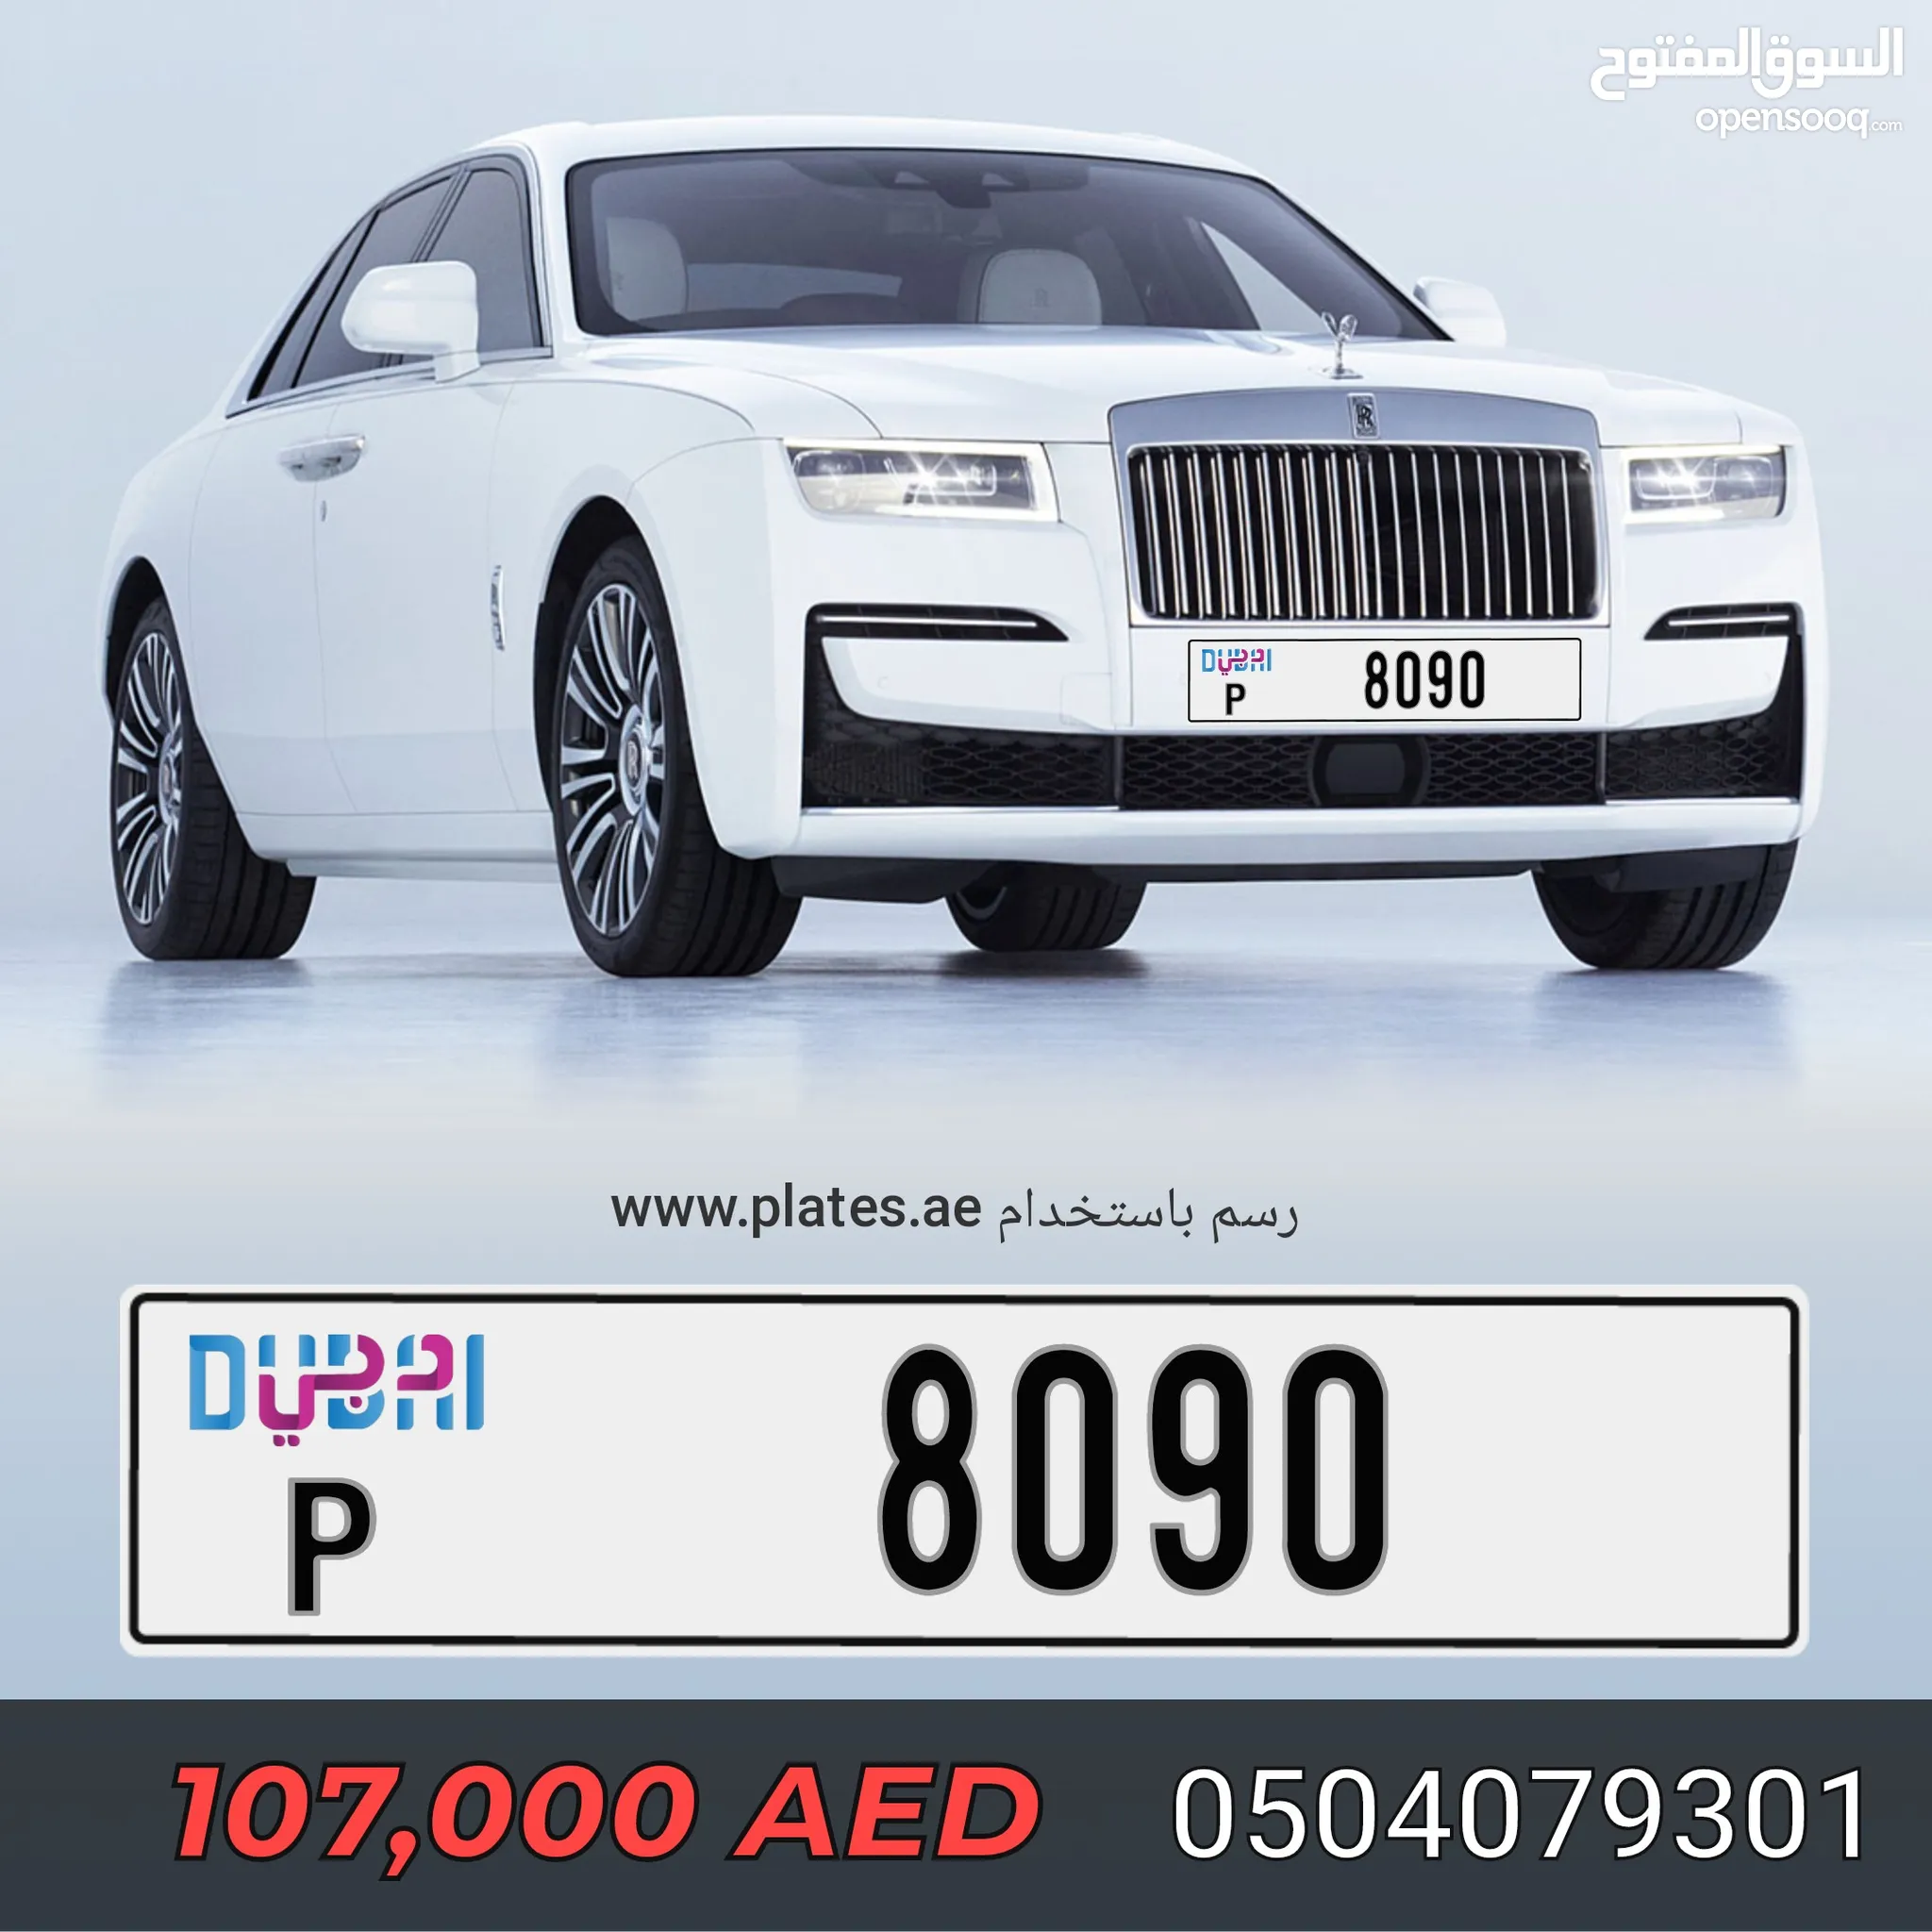 أرقام سيارات مميزة للبيع : لوحات مميزة : افضل الاسعار في الإمارات | السوق  المفتوح